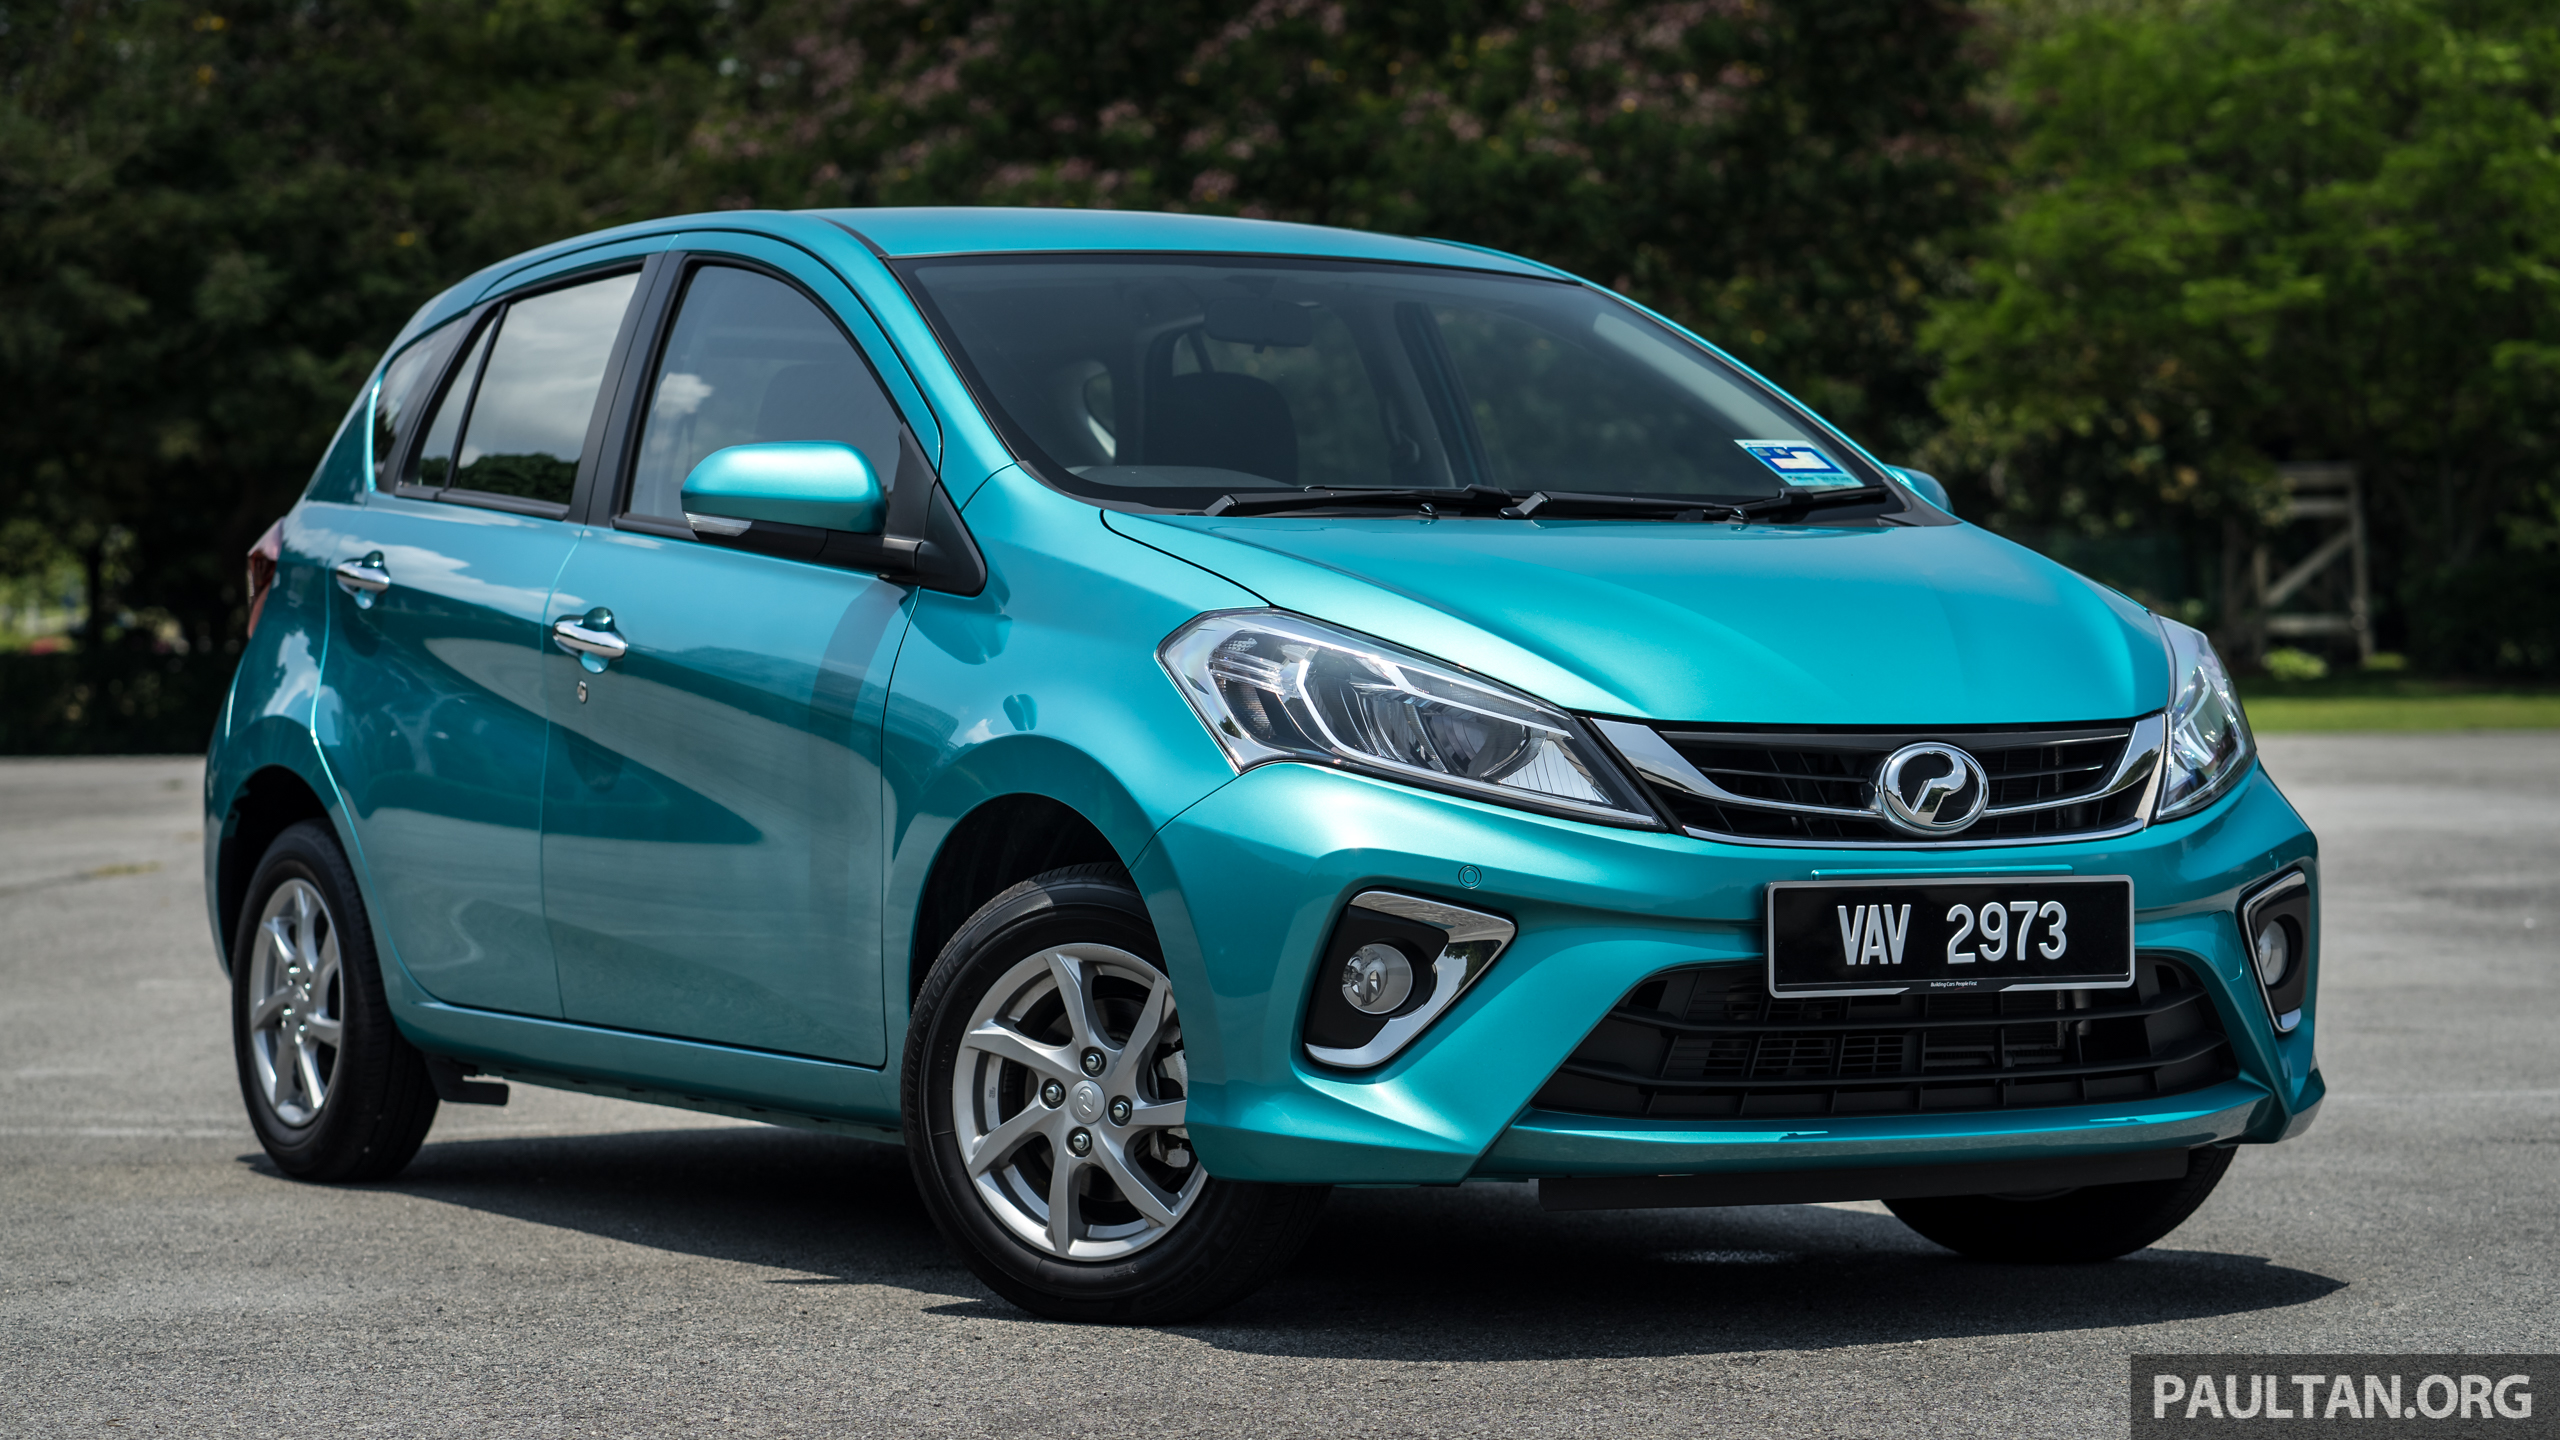 Perodua myvi 2020 price malaysia